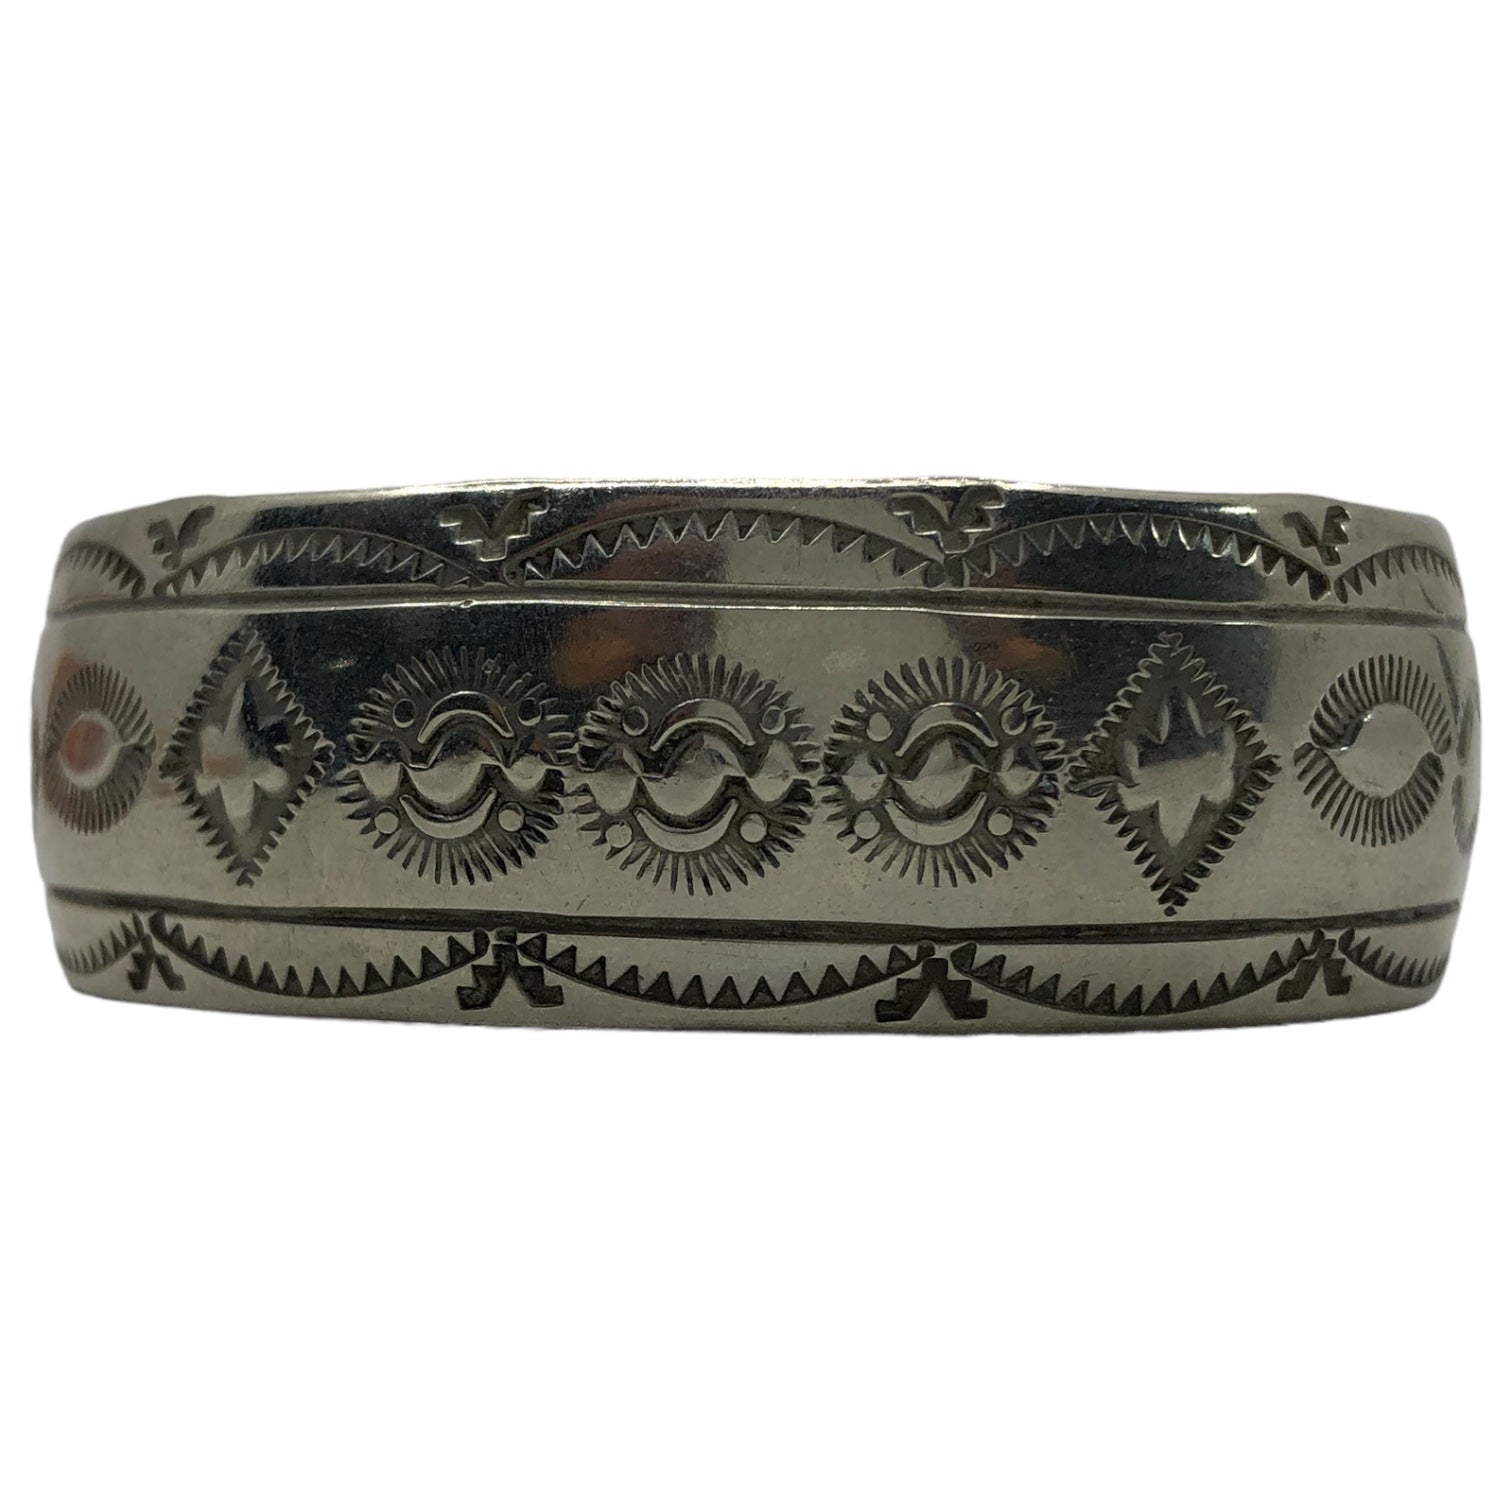 NAVAJO(ナバホ族) indian jewelry silver bangle インディアン ジュエリー シルバー バングル 刻印 W